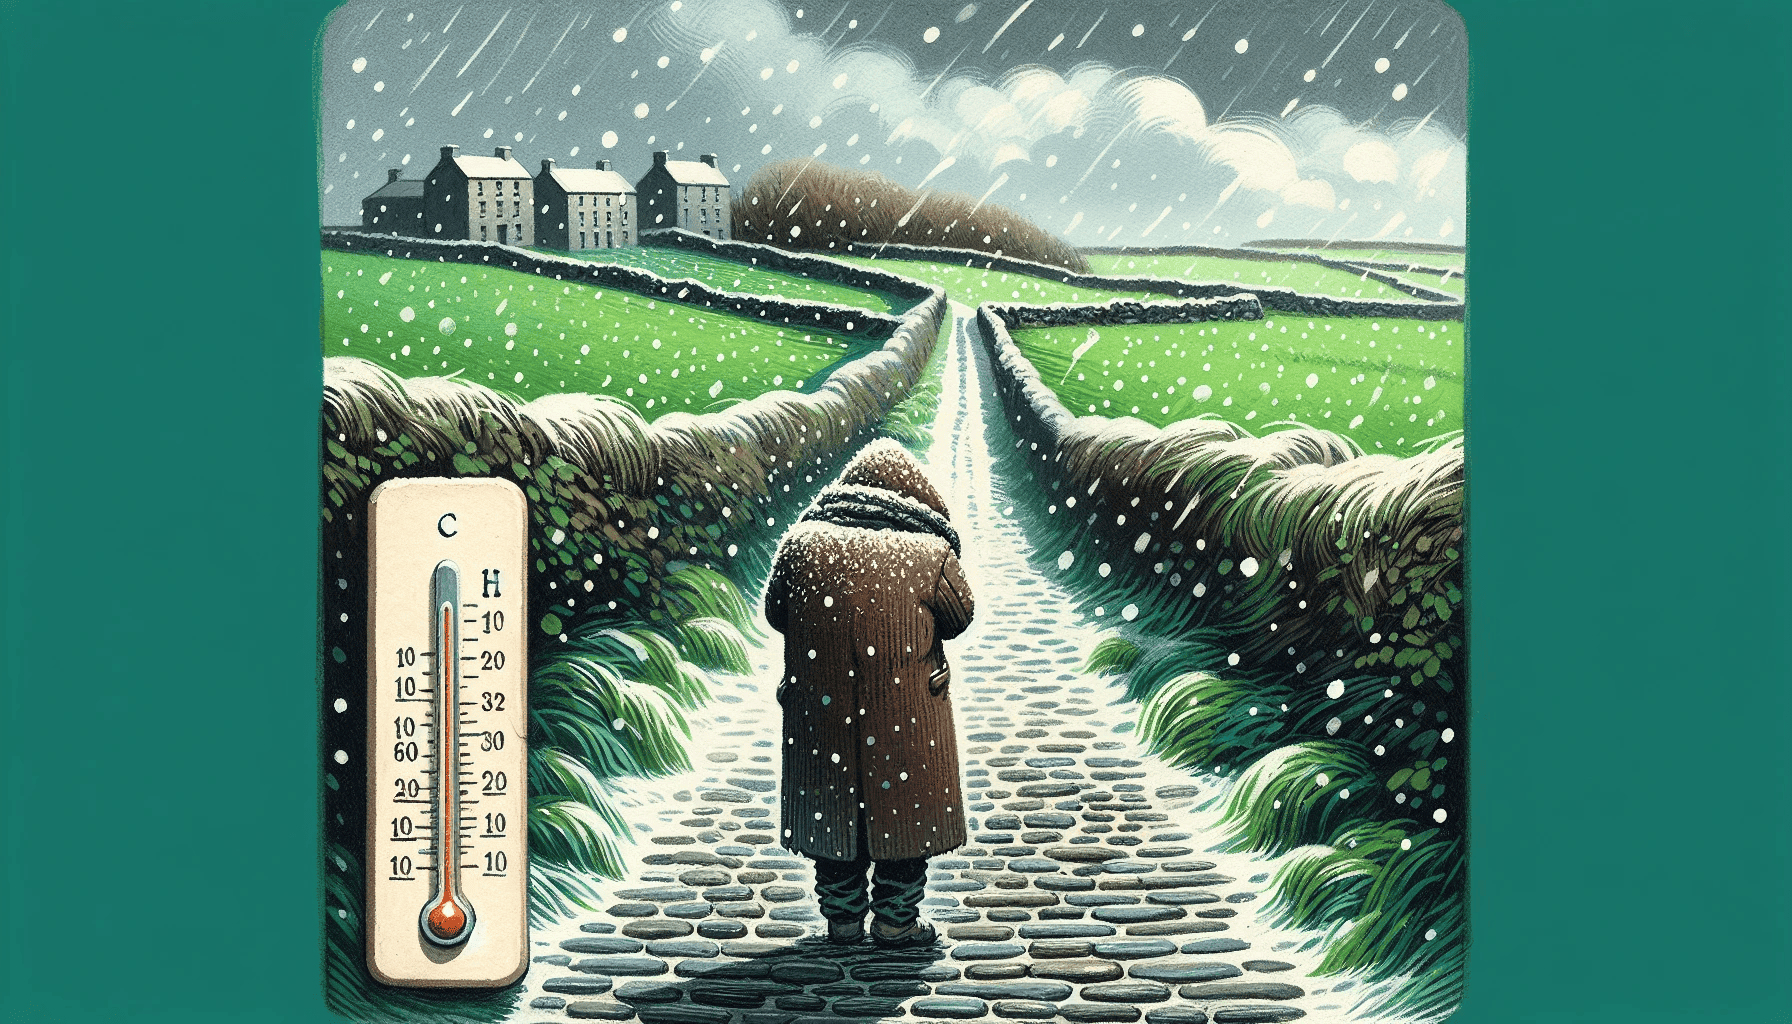 Ireland January weather